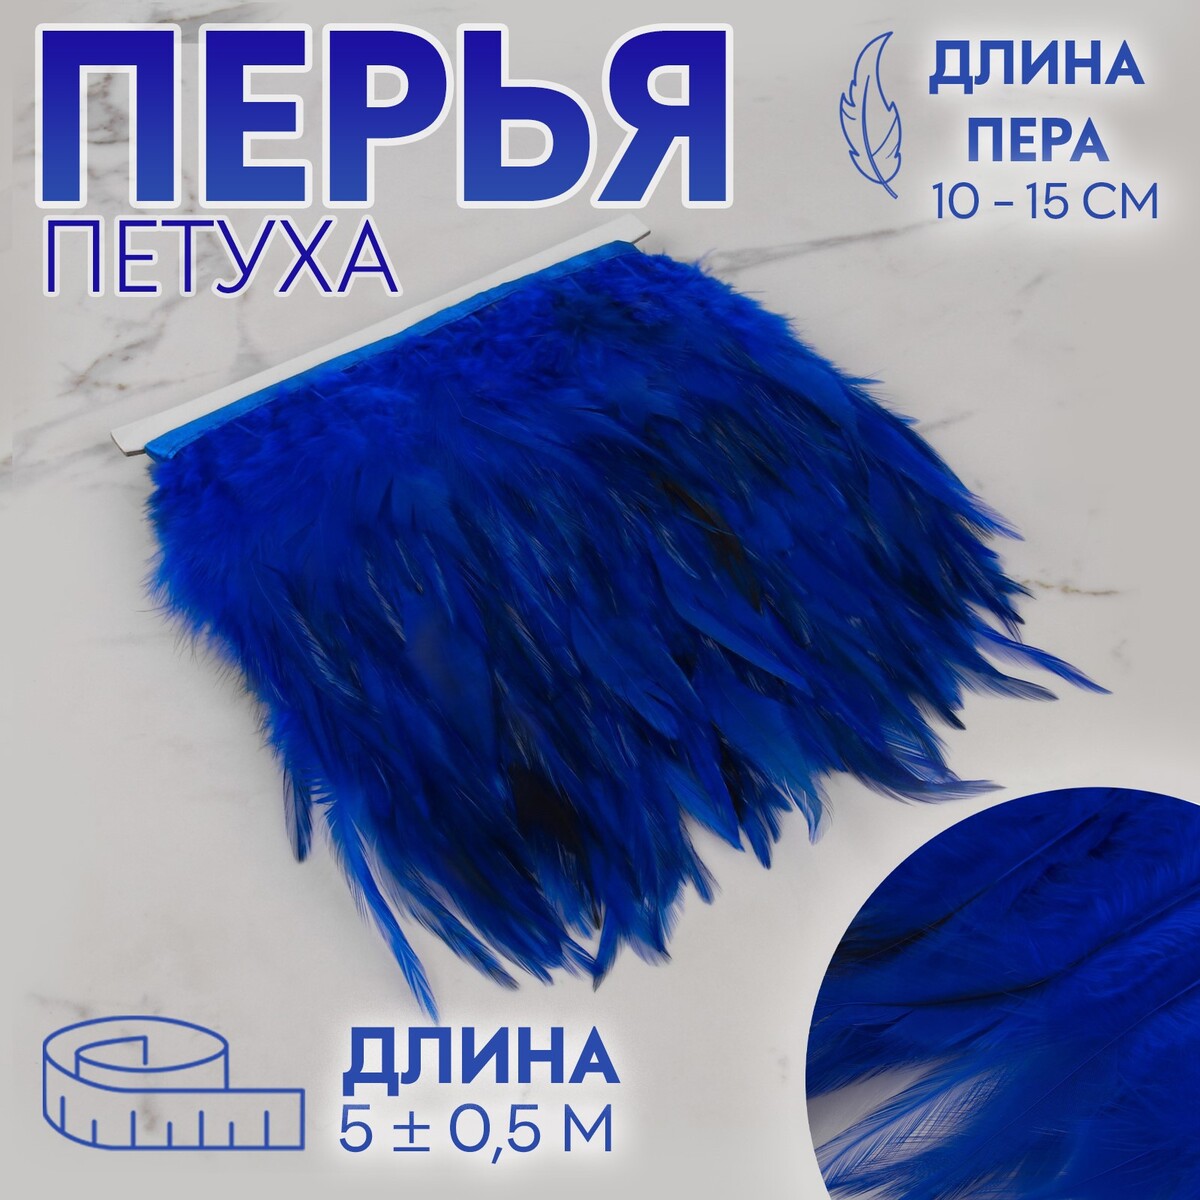 Тесьма с перьями петуха, 10-15 см, 5 ± 0,5 м, цвет синий тесьма с перьями индюка 13 17 см 5 ± 0 5 м изумрудный